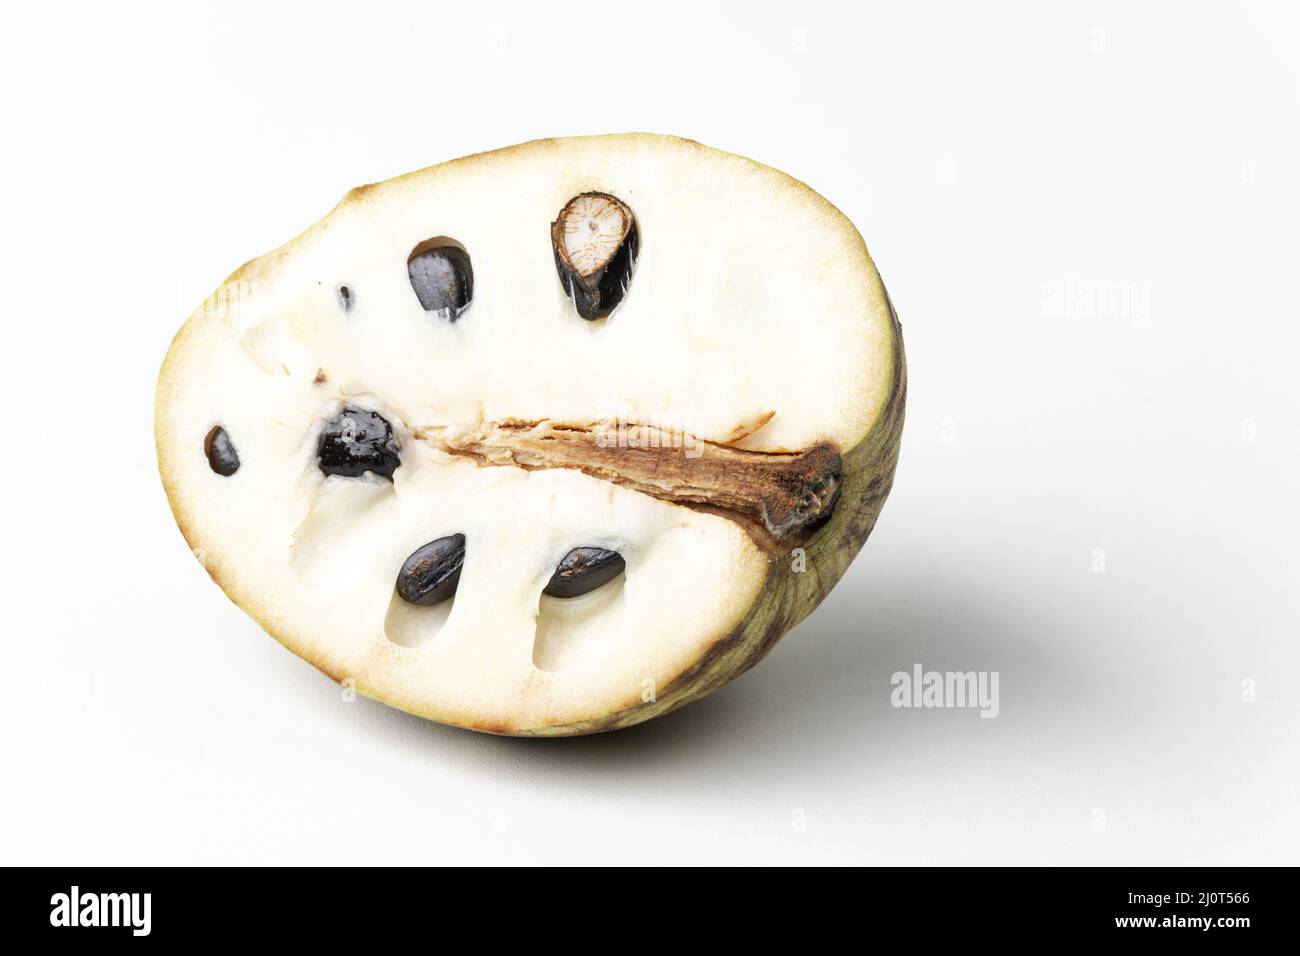 Chirimoya fruit on white background Stock Photo